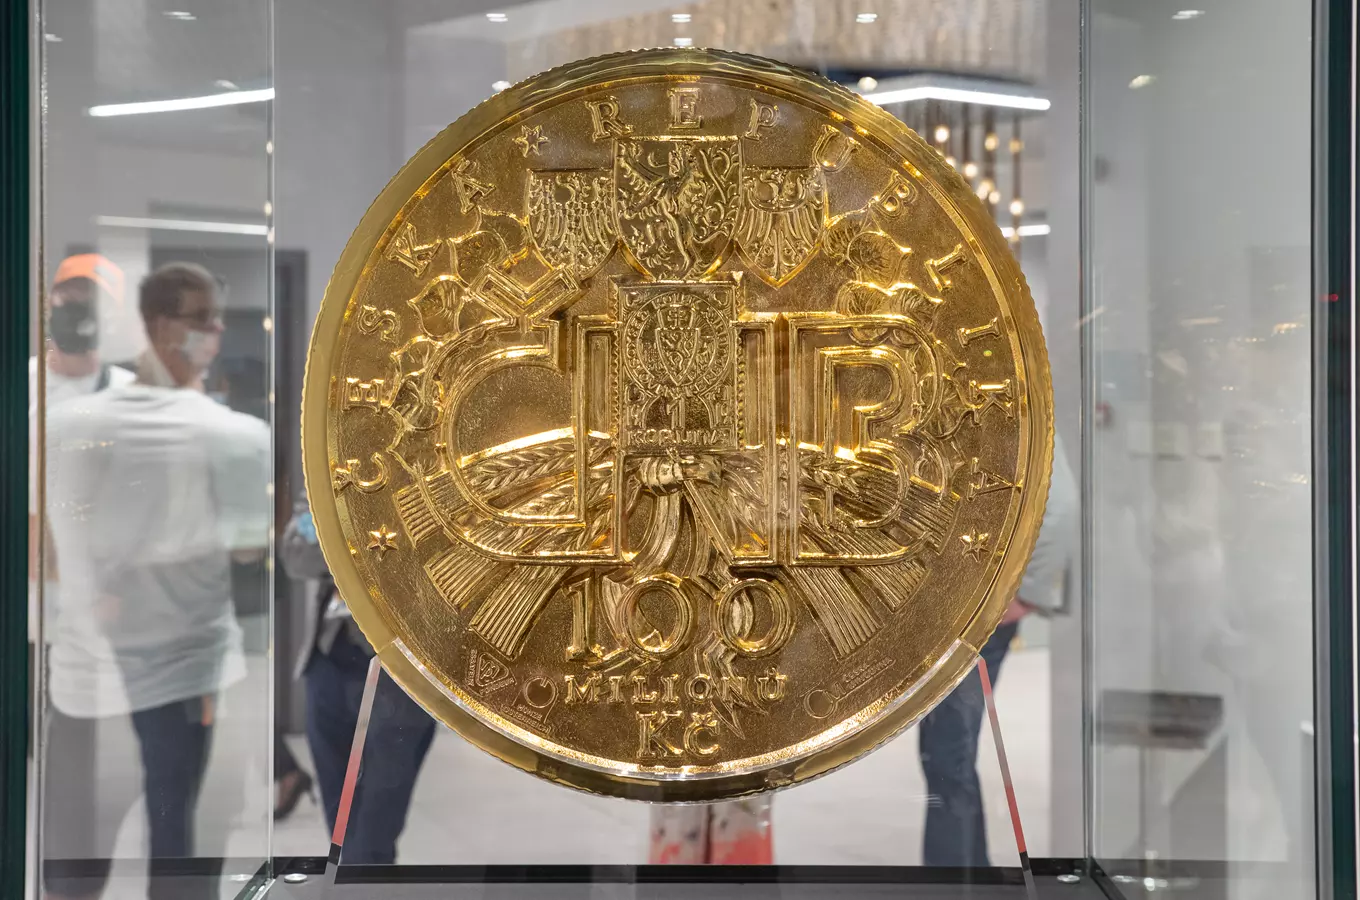 Největší zlatá mince - největší mince světa, vyrobená gravírováním